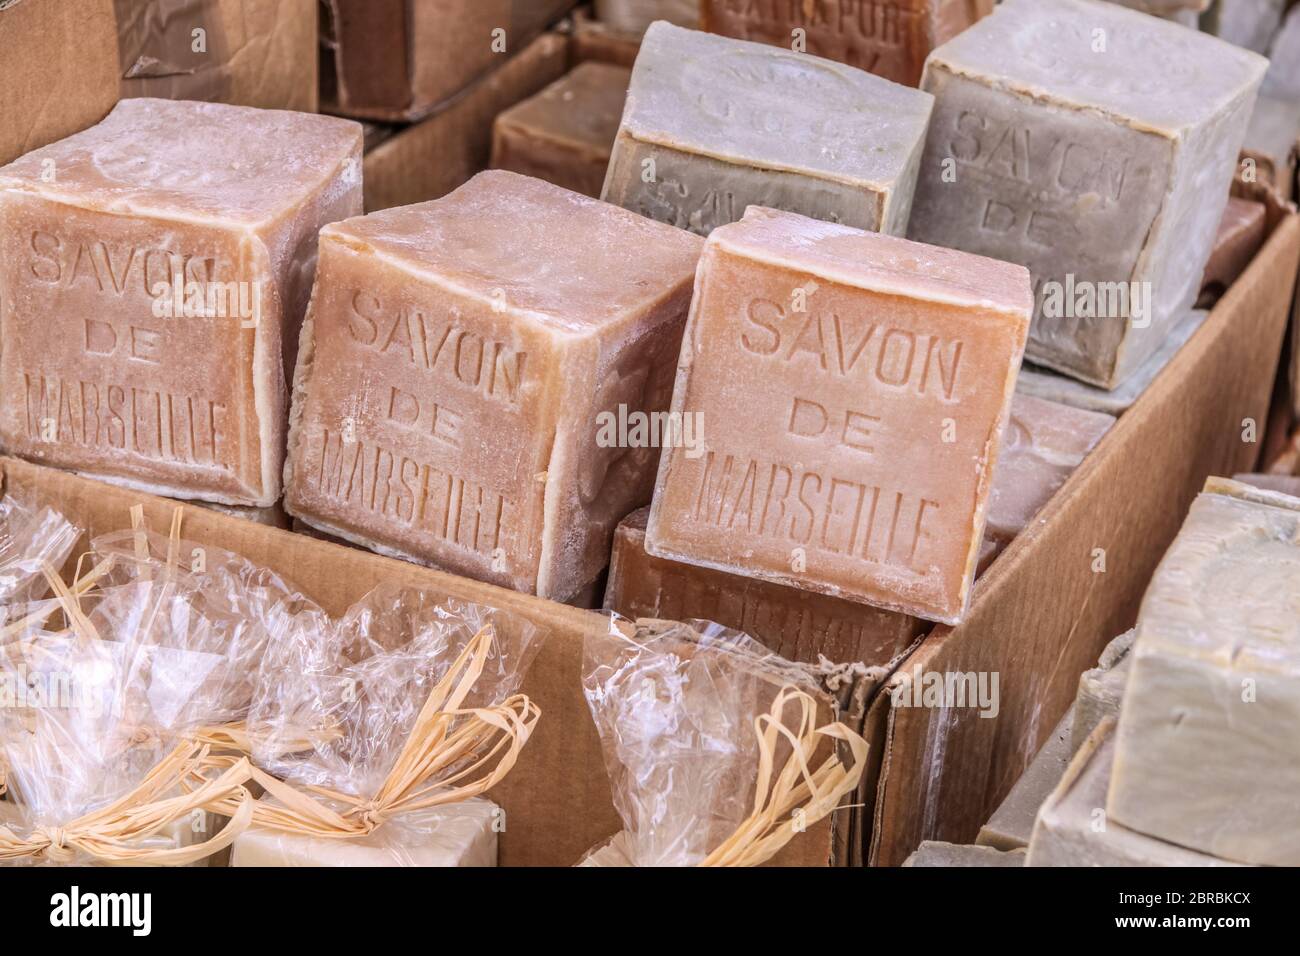 Savons rustiques dans le village de Gordes, Provence, France Banque D'Images